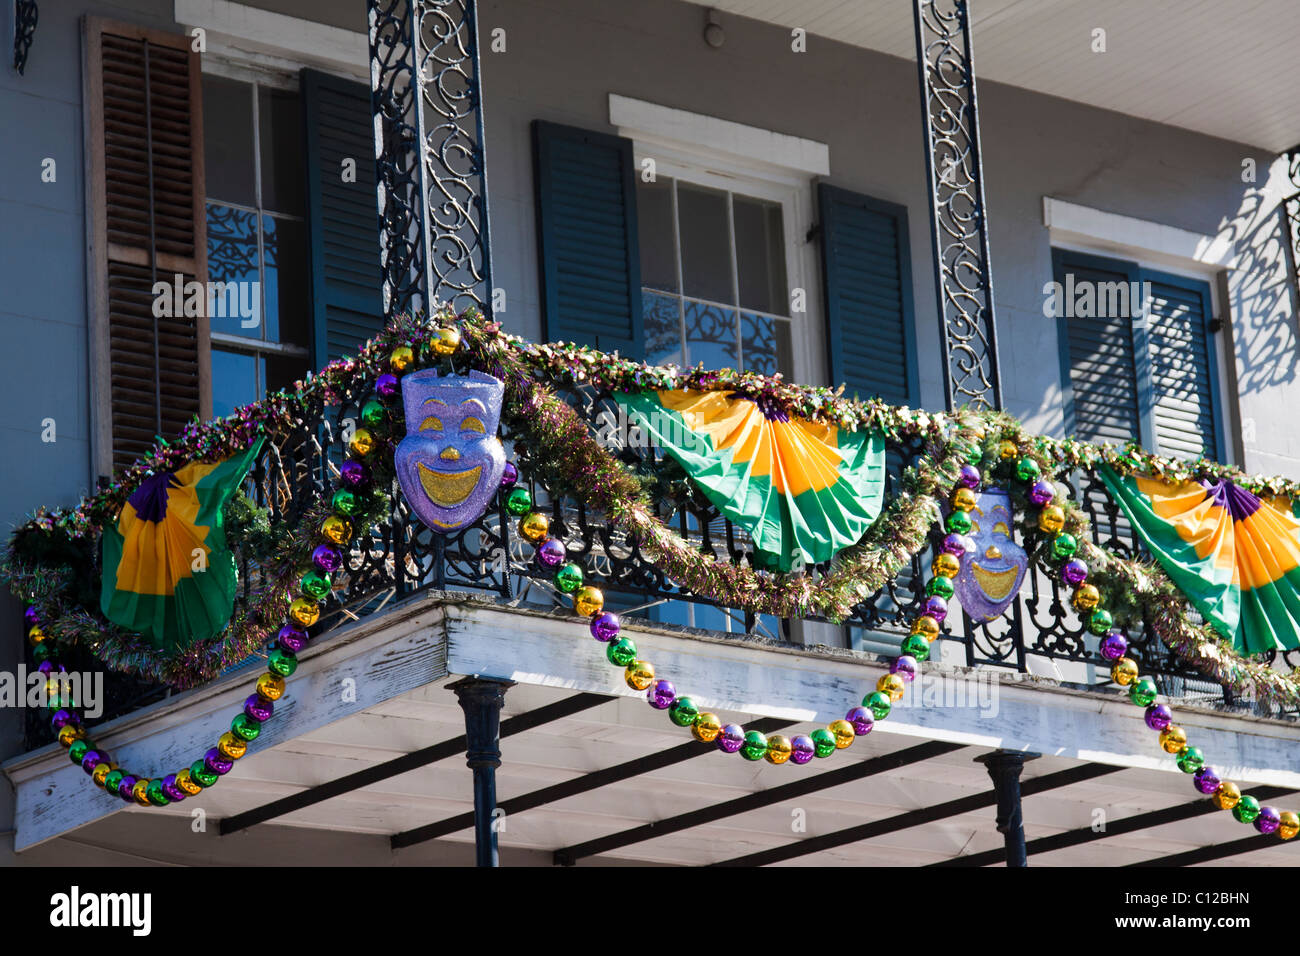 Gros plan du balcon en fer forgé avec des décorations de fête pour Mardi Gras dans le quartier français de La Nouvelle-Orléans, Louisiane Banque D'Images